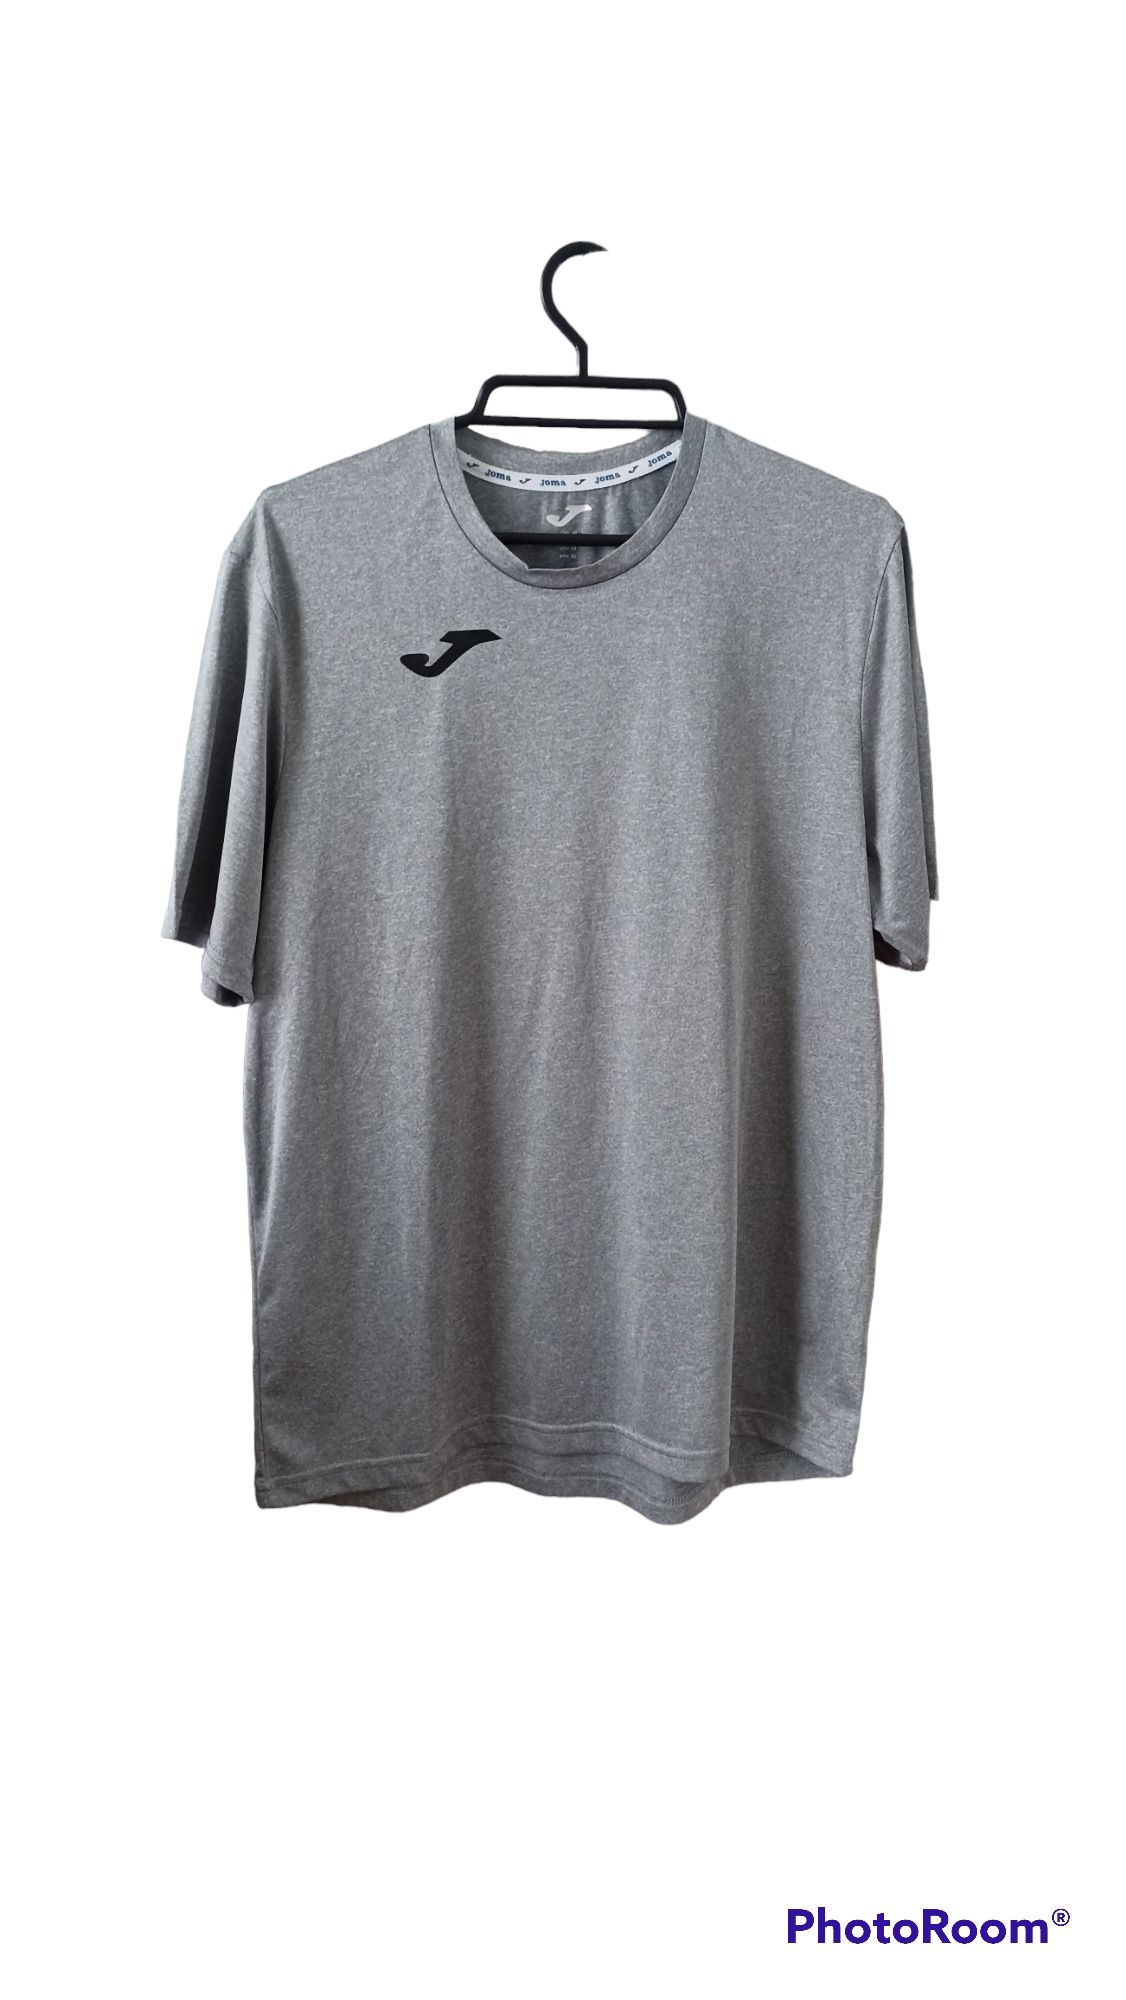 Koszulka męska piłkarska na siłownie sportowa szara czarna Joma